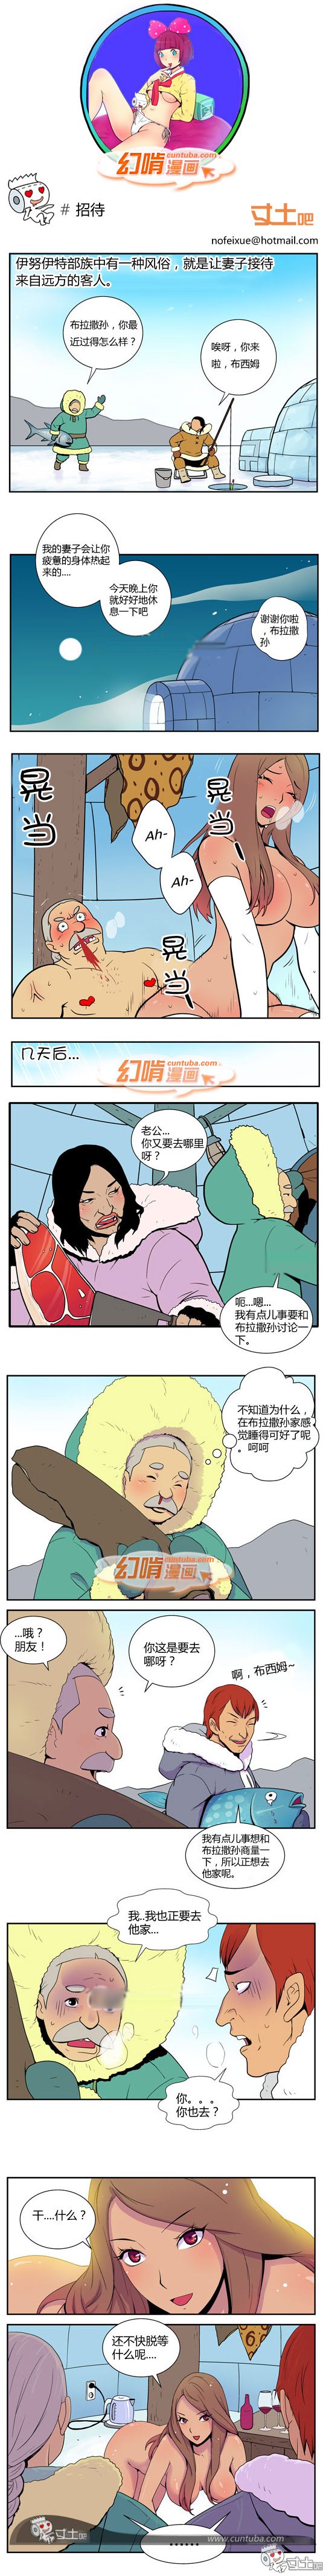 幻啃漫画招待